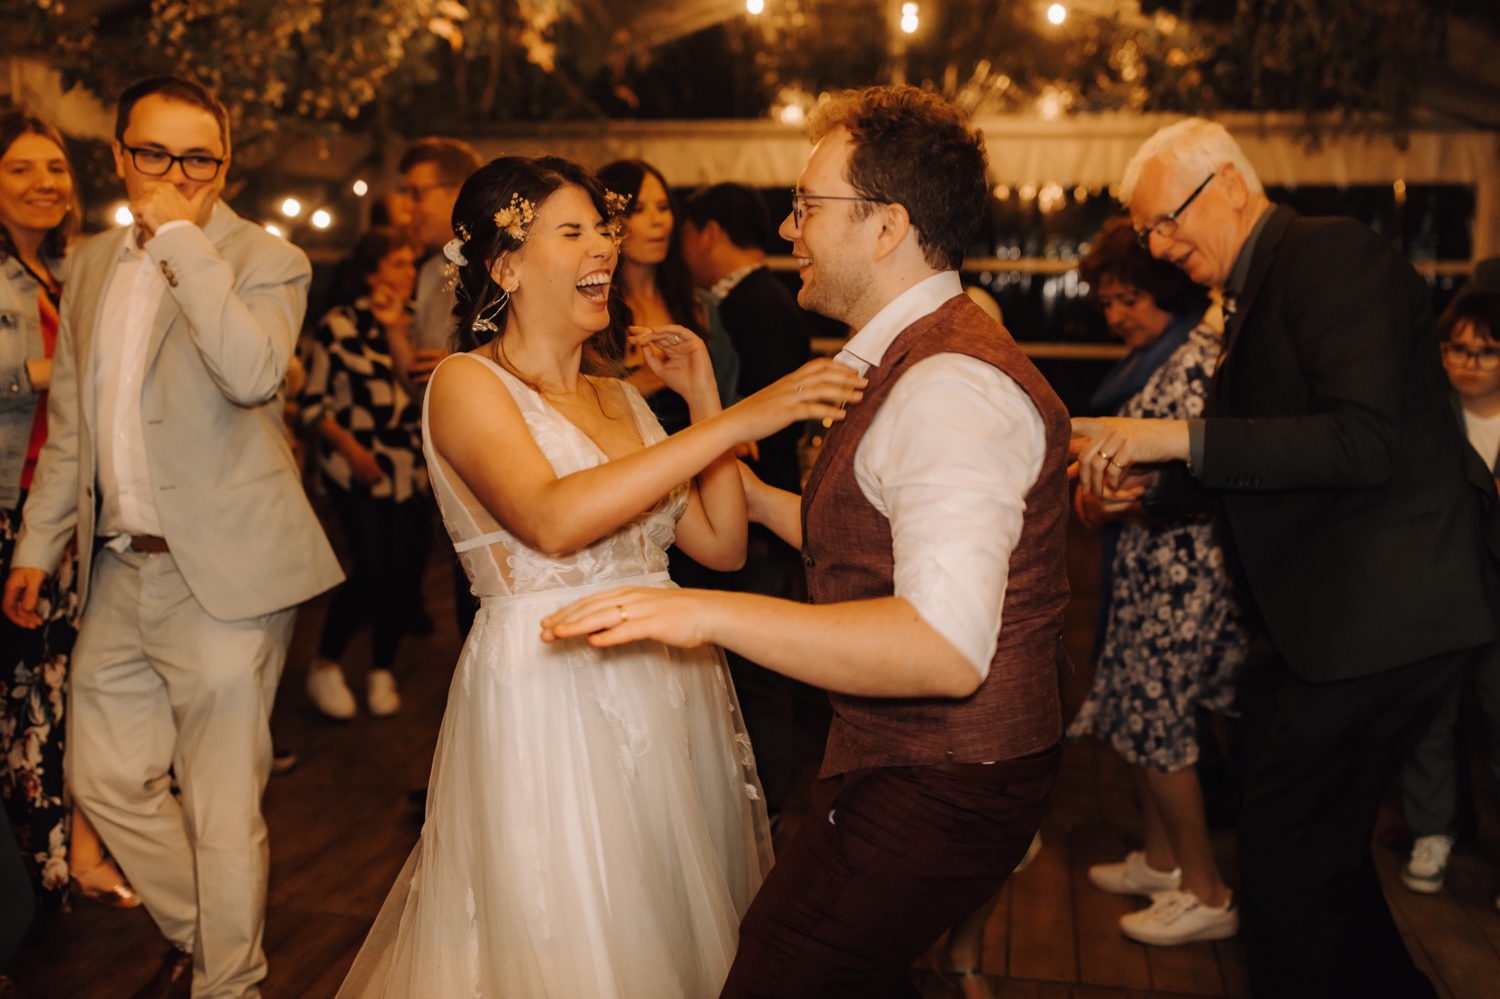 Huwelijksfotograaf Limburg - bruidspaar danst tijdens openingsdans